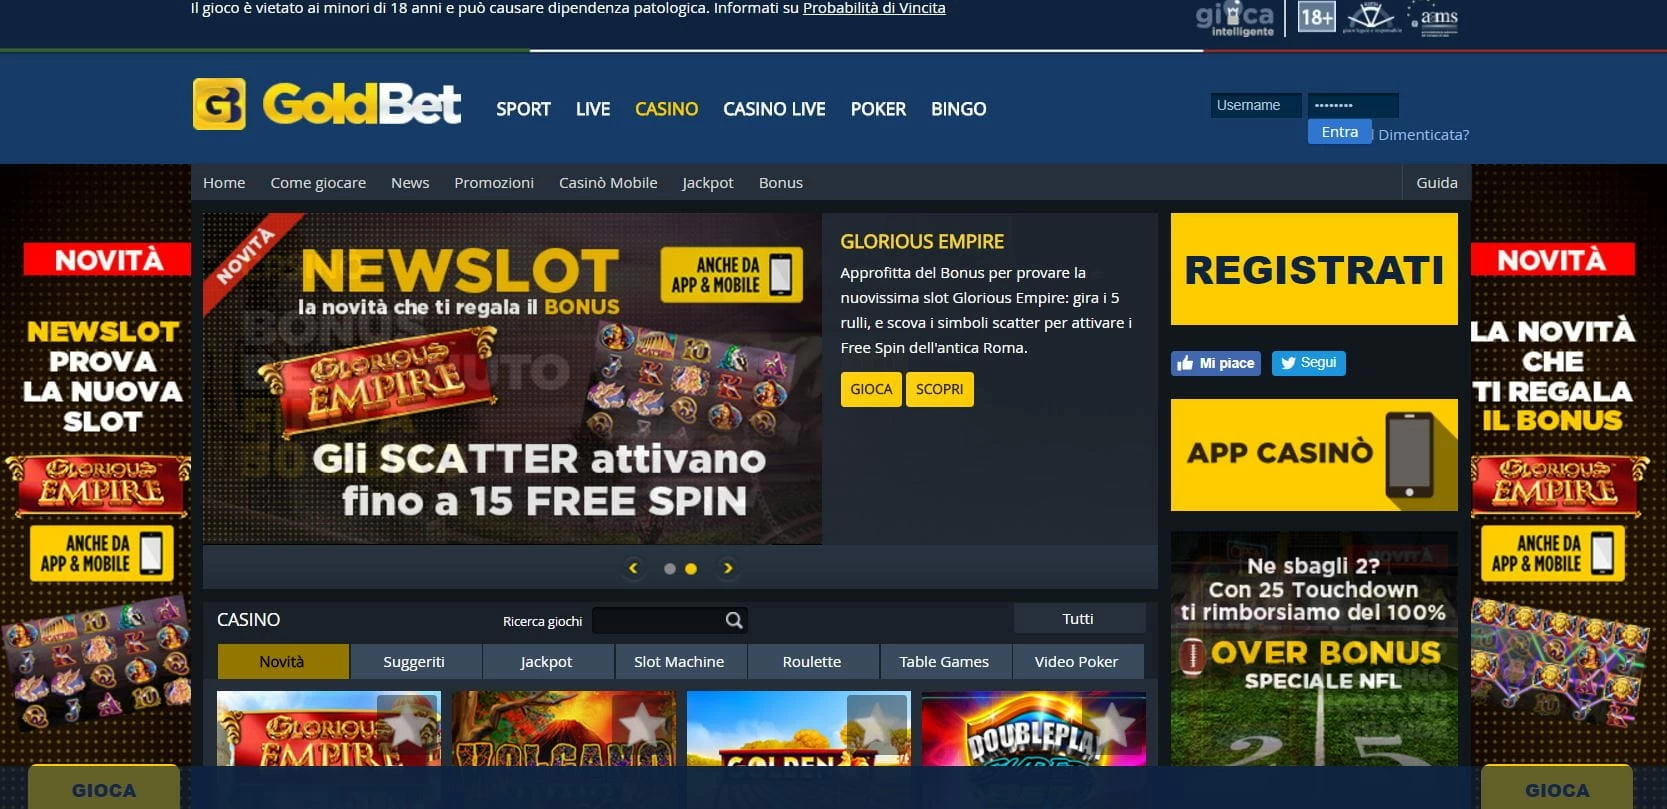 goldbet casino homepage